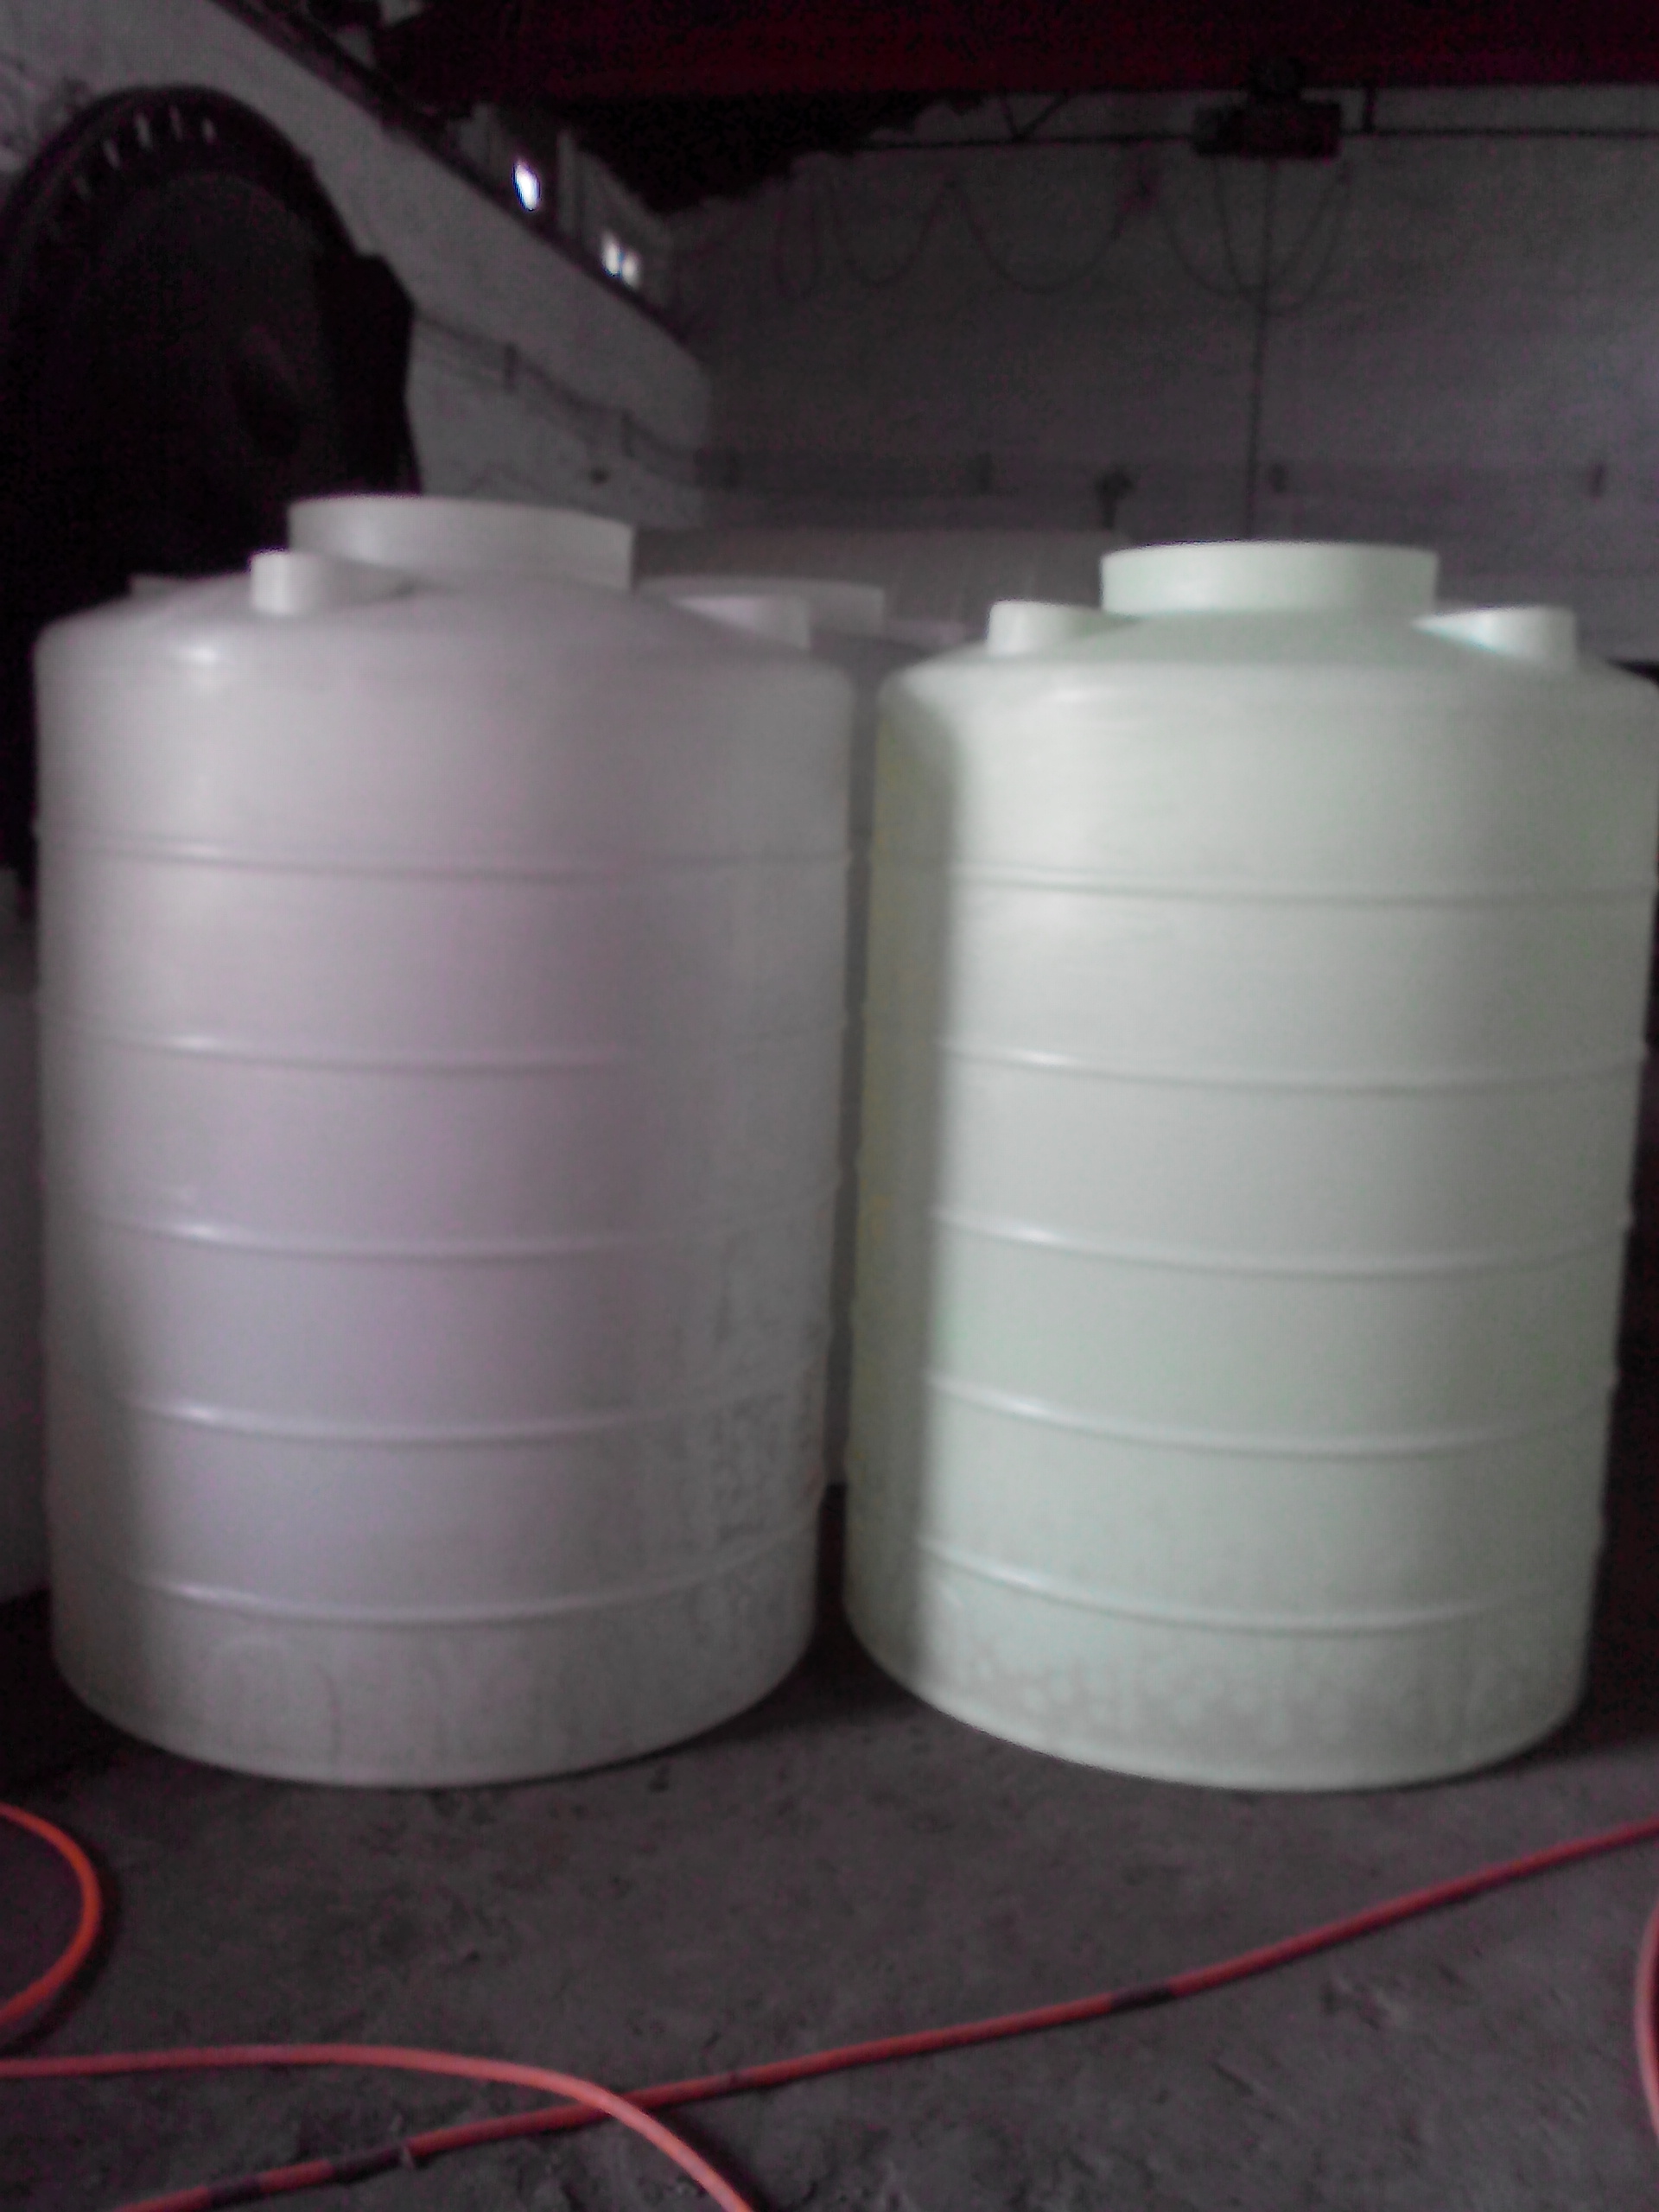 供应化工塑料罐 加药箱 养殖方箱 吨桶特耐环保厂家直销